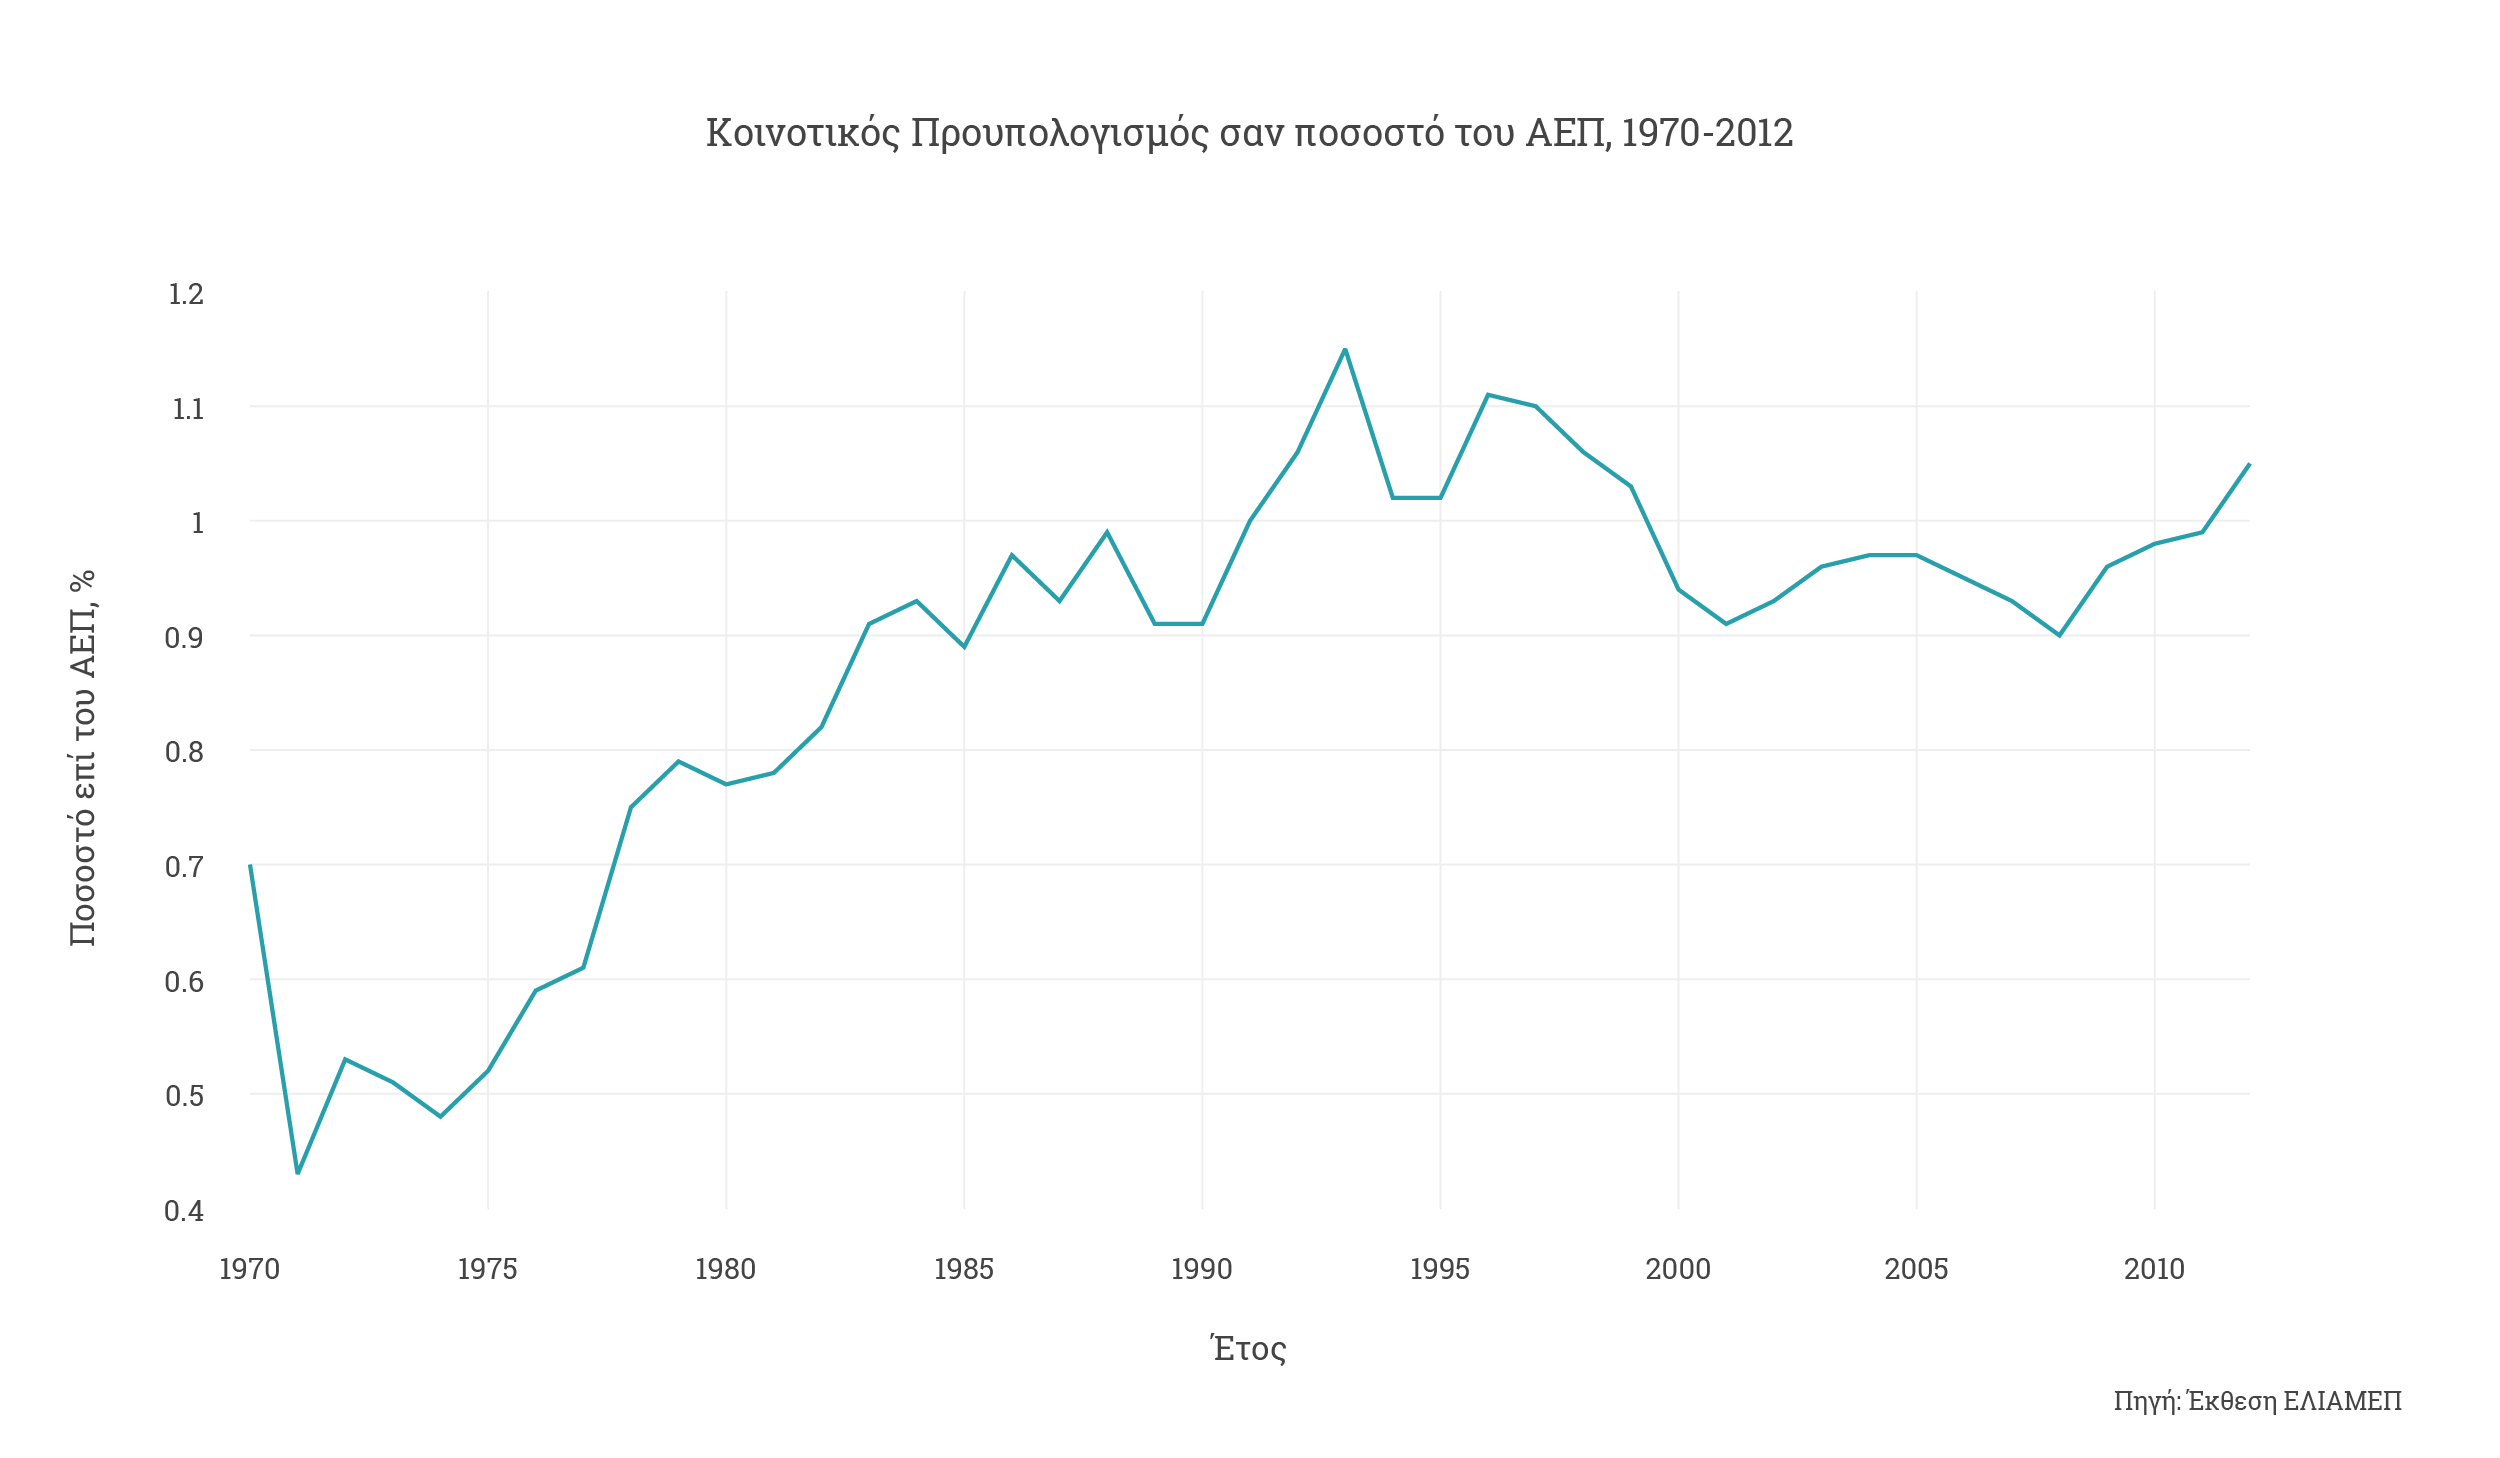 Κοινοτικος Προυπολογισμος σαν ποσοστο του ΑΕΠ, 1970-2012 (short)